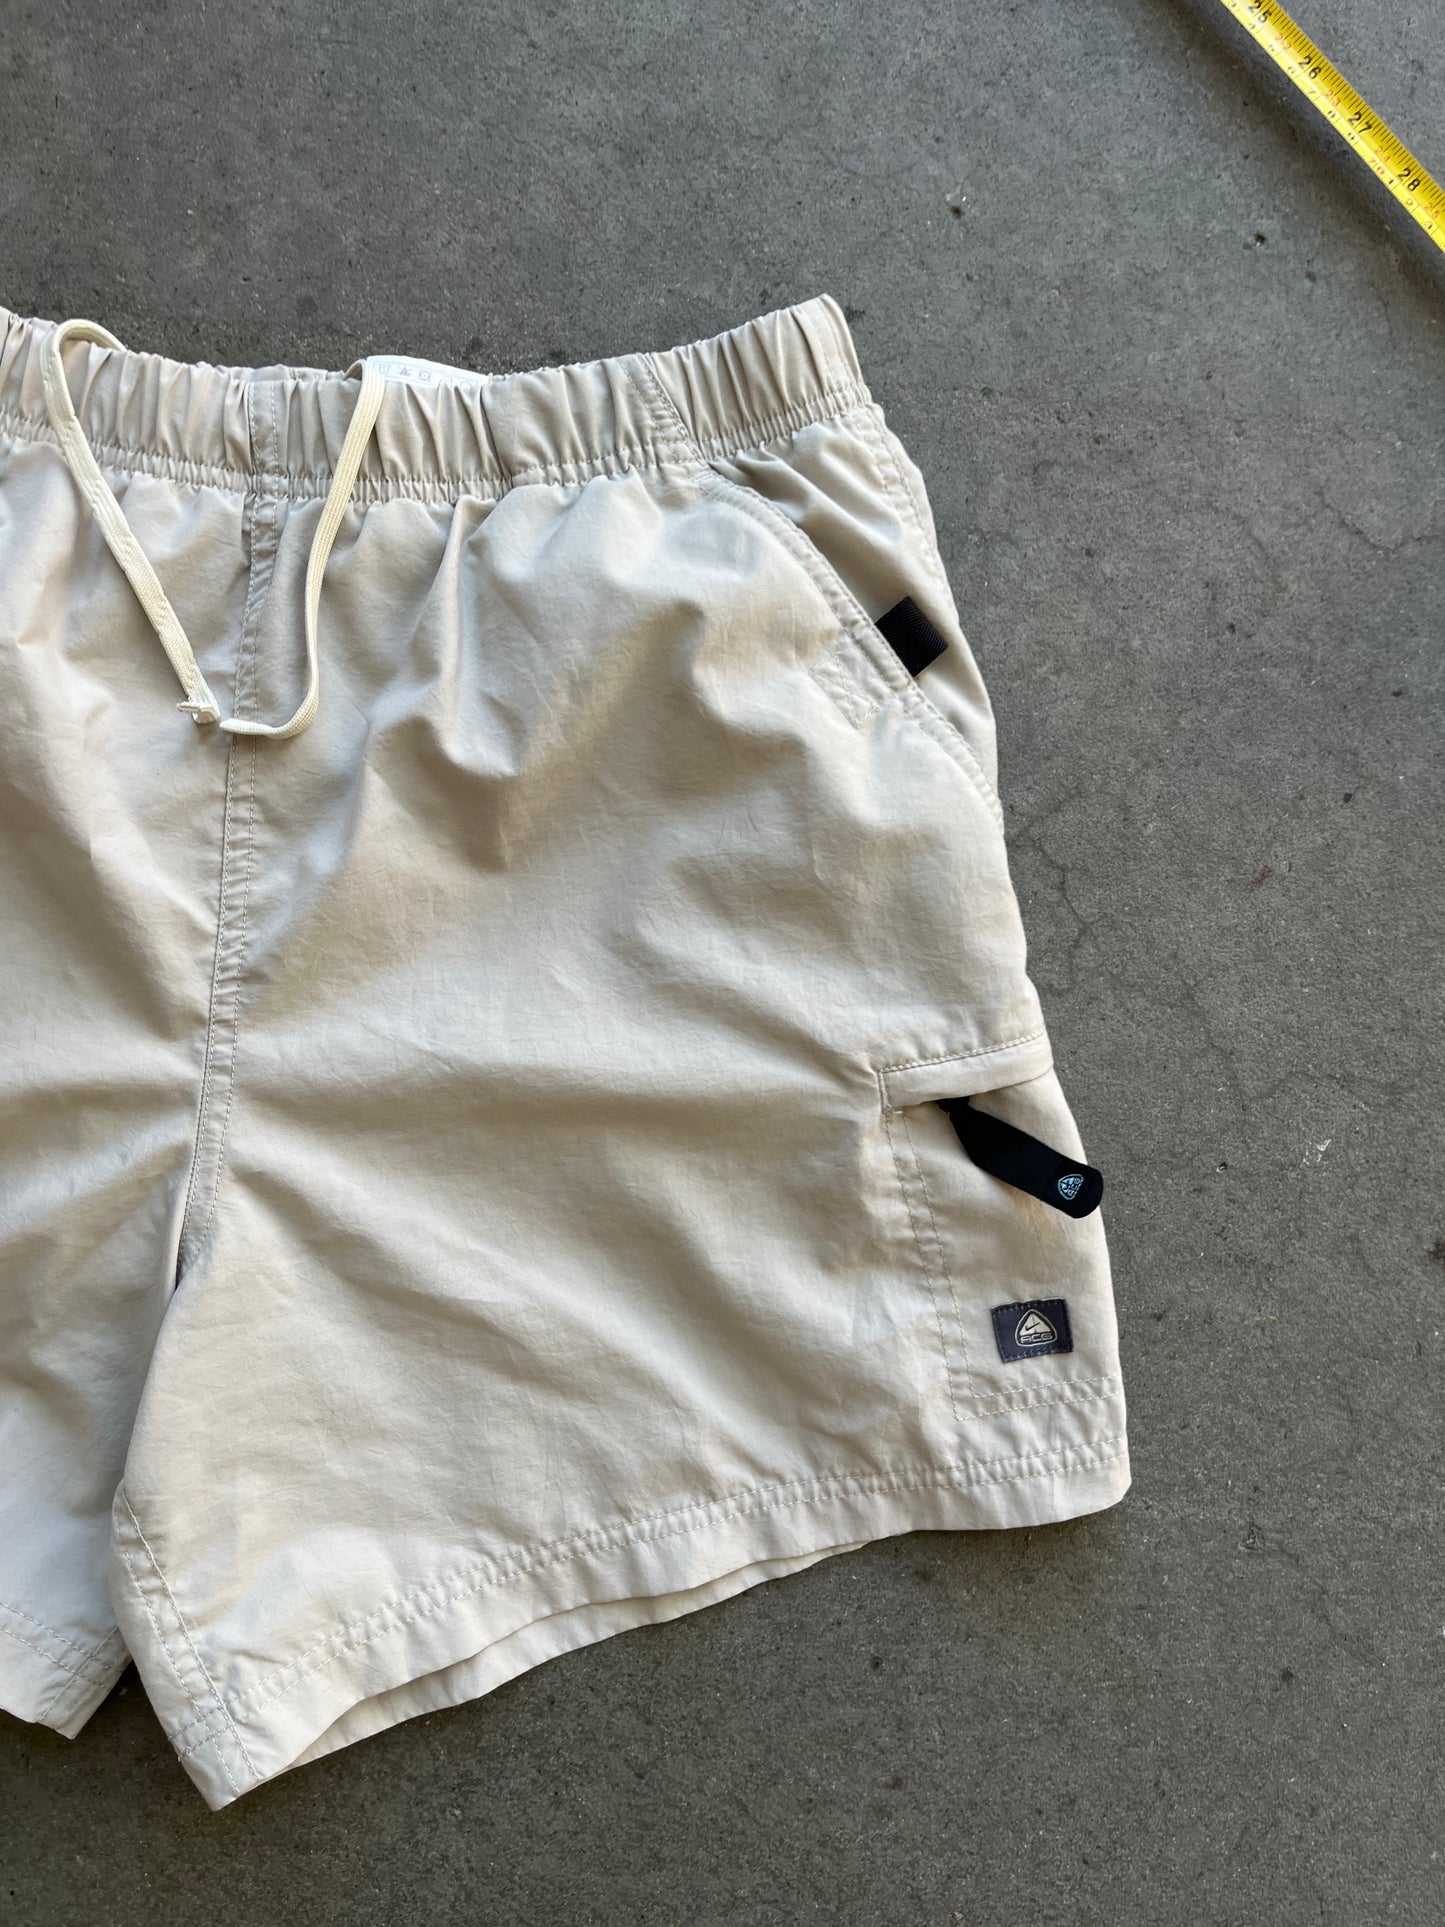 (30”) Vintage ACG Nylon Hiking Shorts